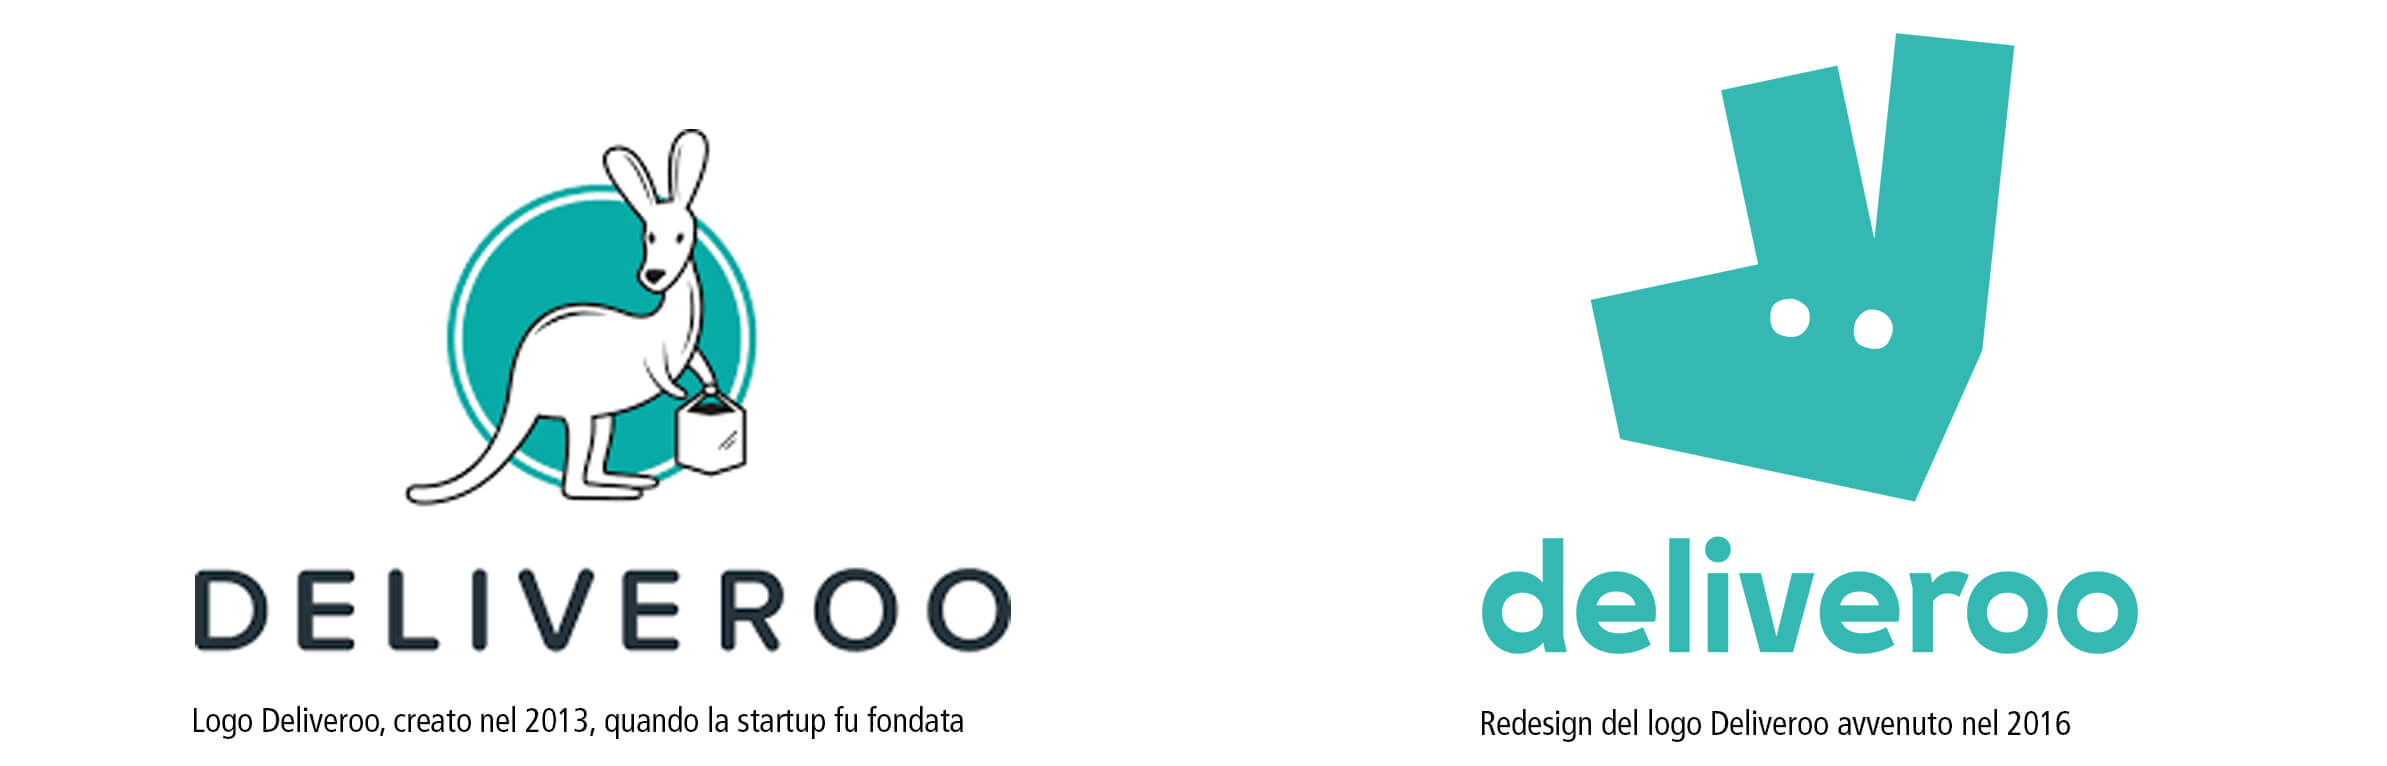 Logo Deliveroo - Versione precedente e versione rebrand